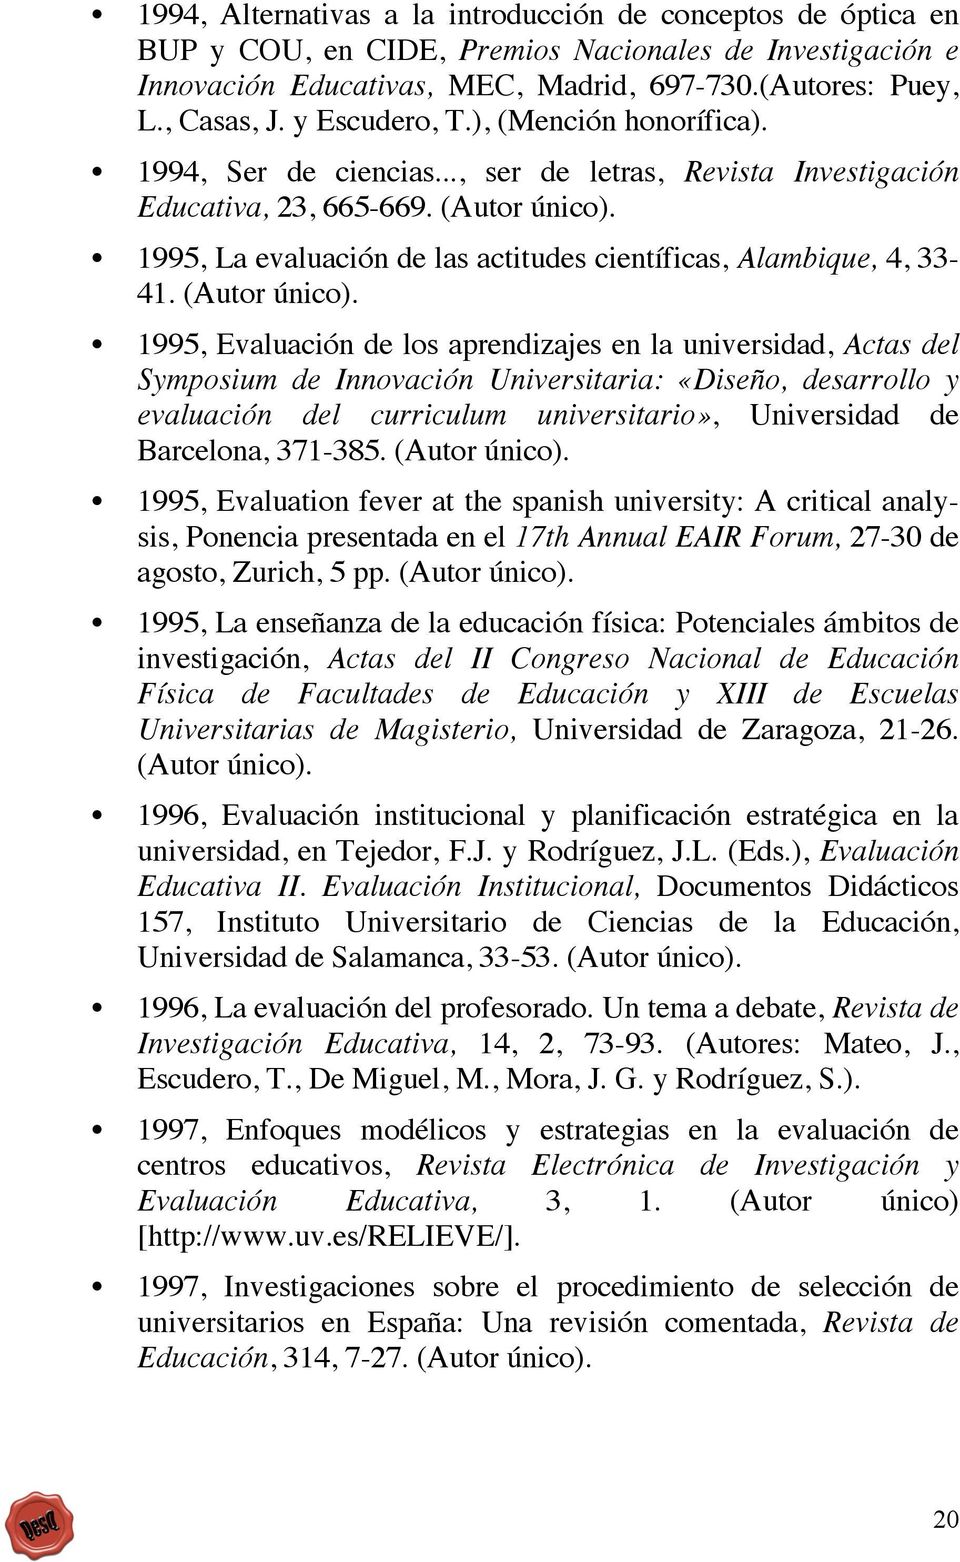 1995, La evaluación de las actitudes científicas, Alambique, 4, 33-41. (Autor único).